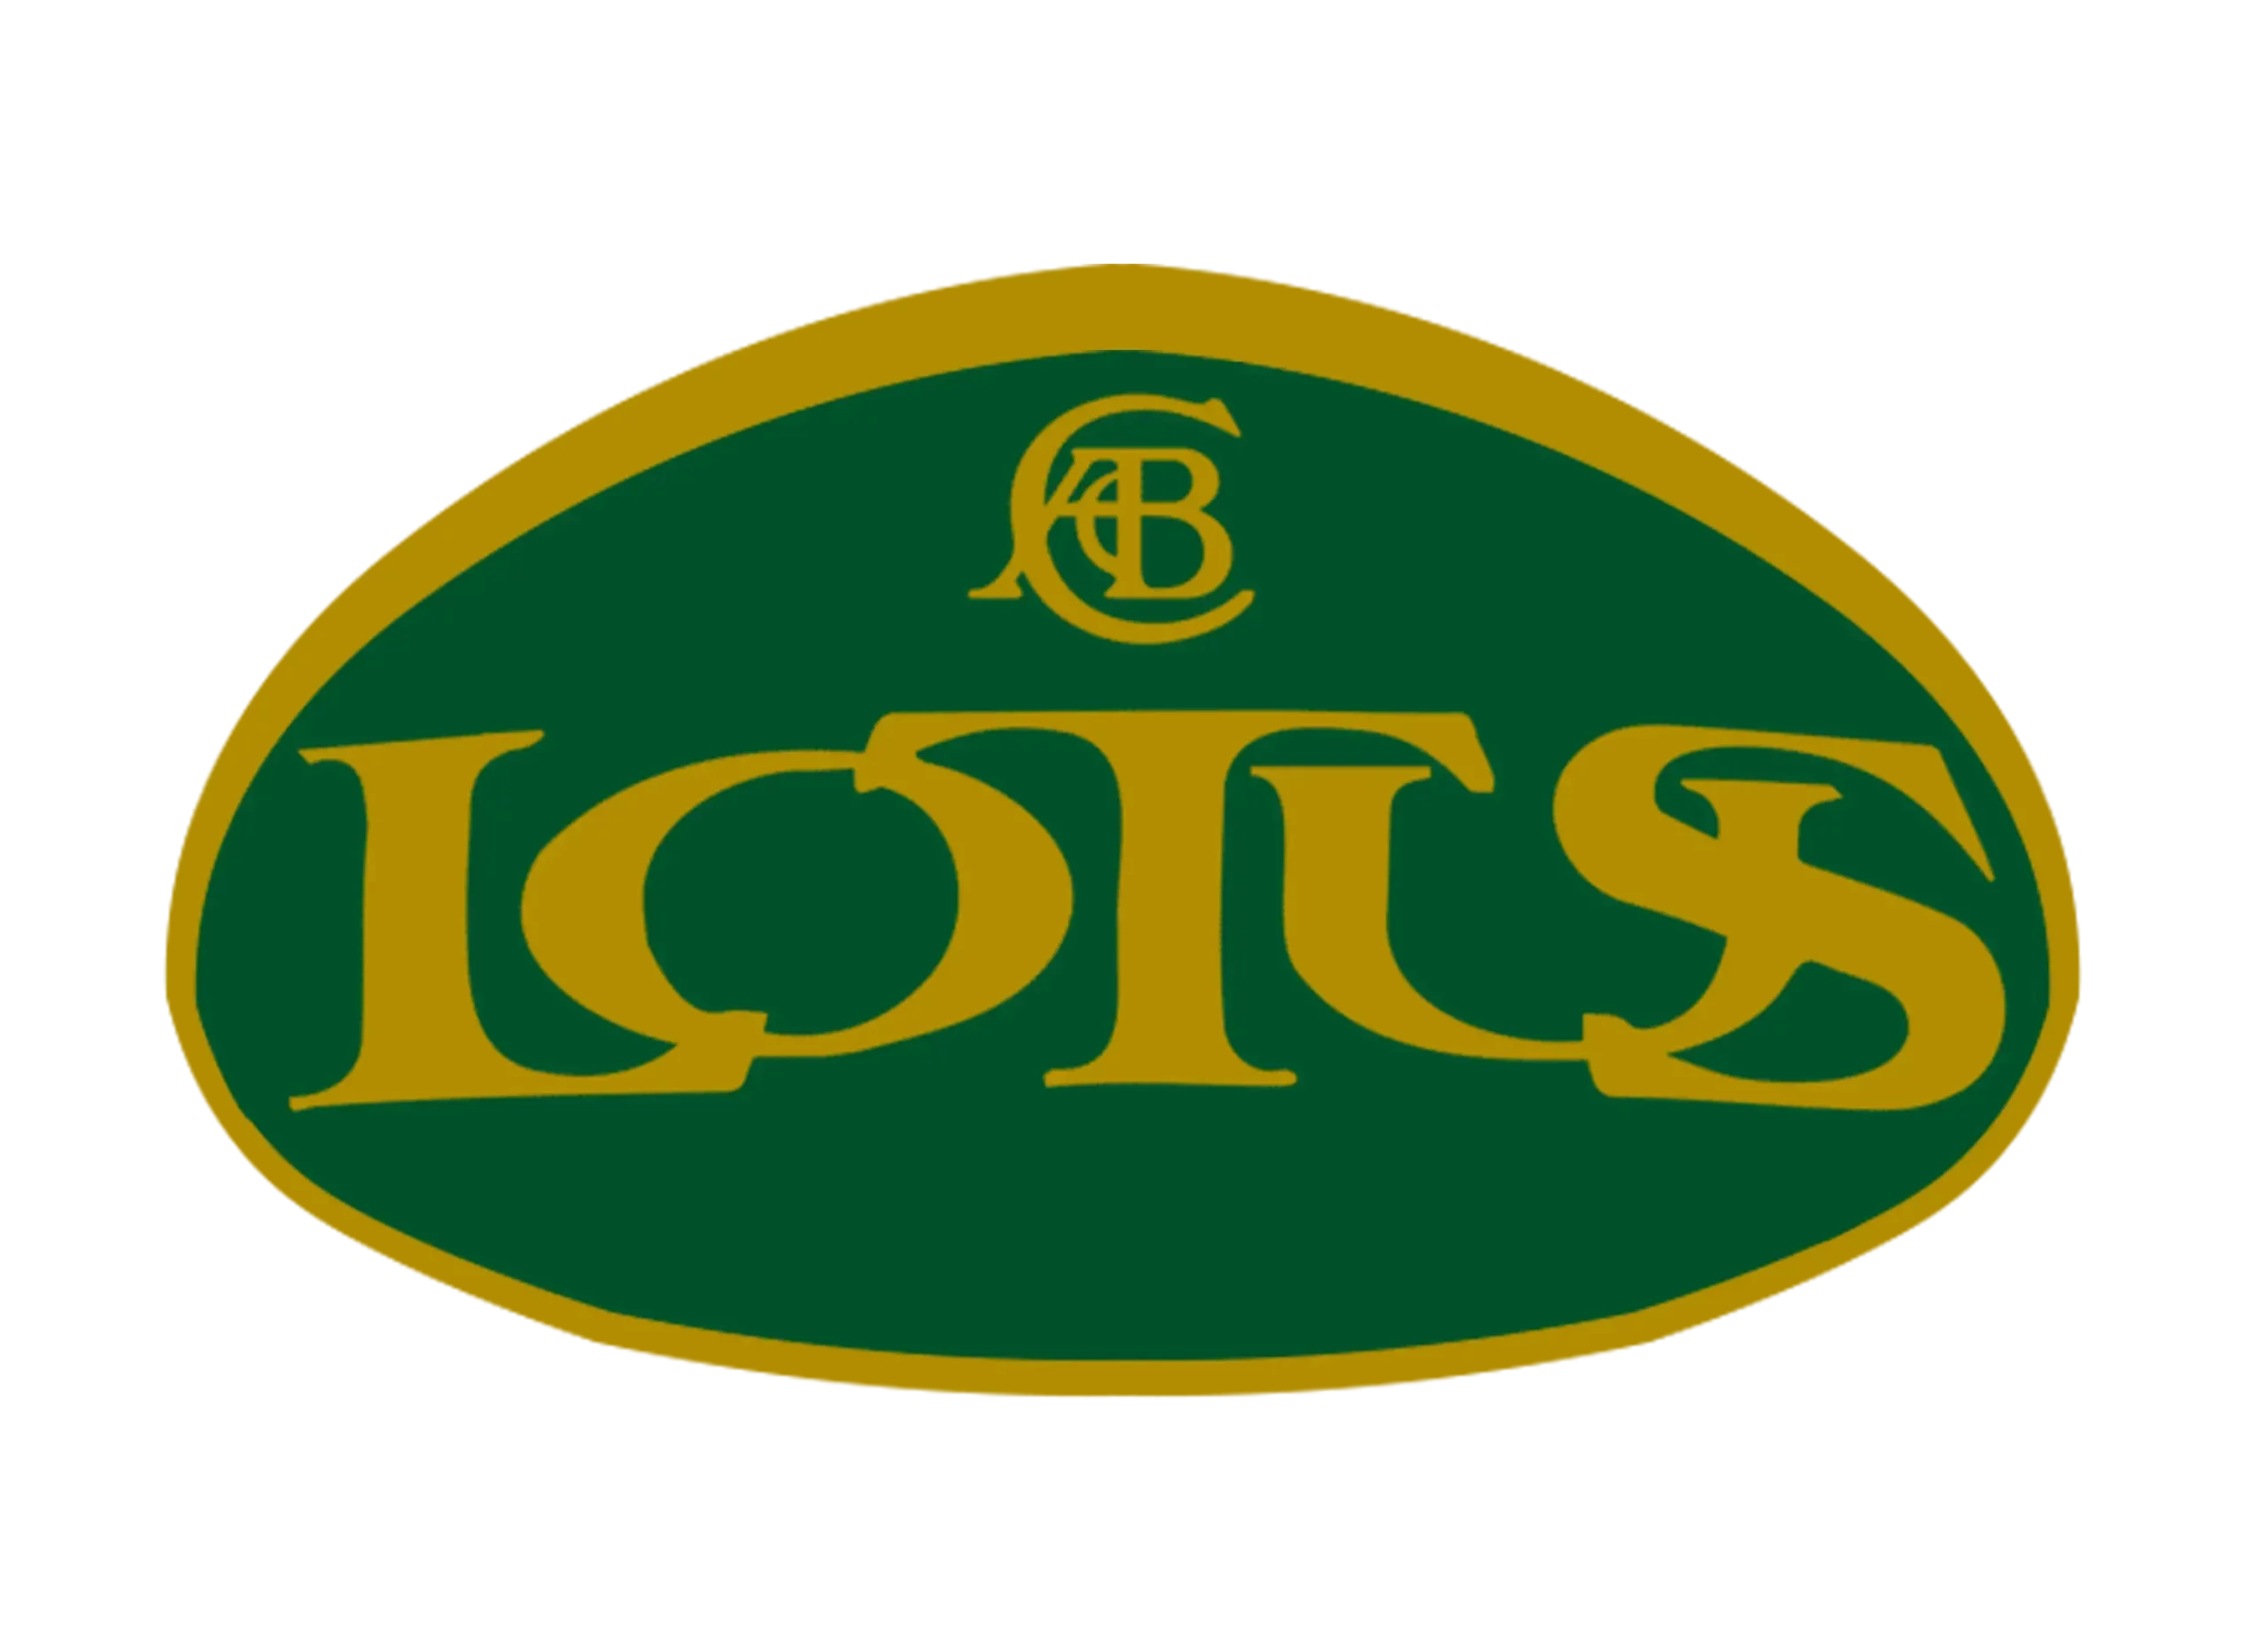 Lotus logo 1986-1989